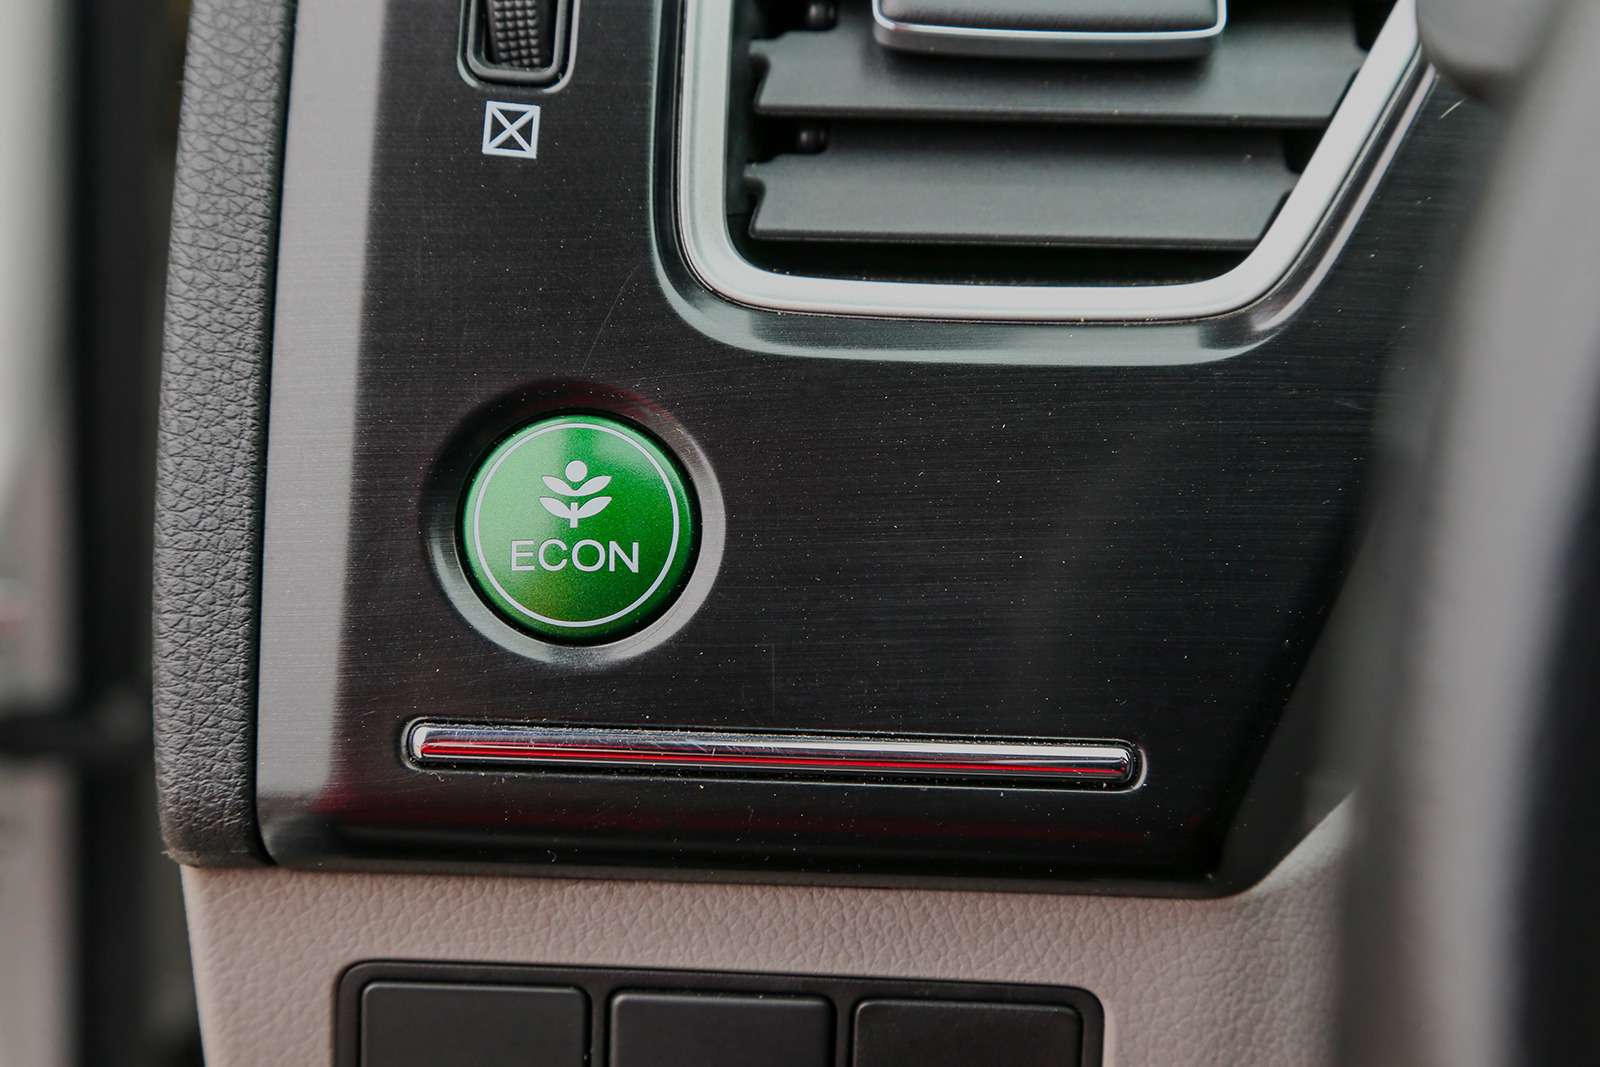 Кнопка ECON сбивает с мотора спесь и помогает экономить стакан-другой бензина. Для новичков этот режим небесполезен на скользкой дороге.